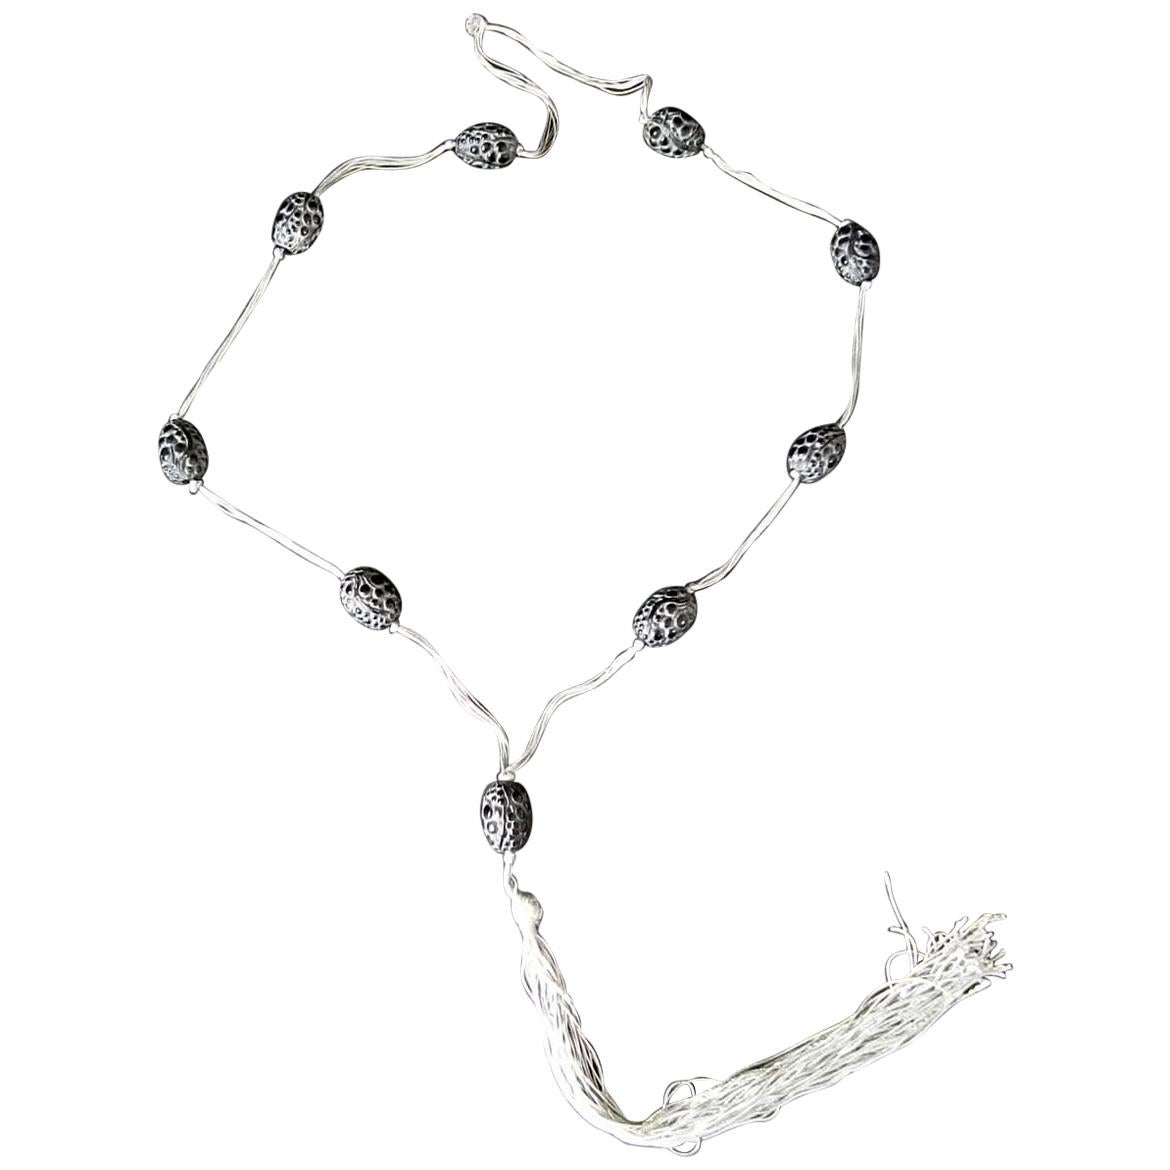 Halskette „Grosses Graines“ von Rene Lalique aus schwarzem Glas